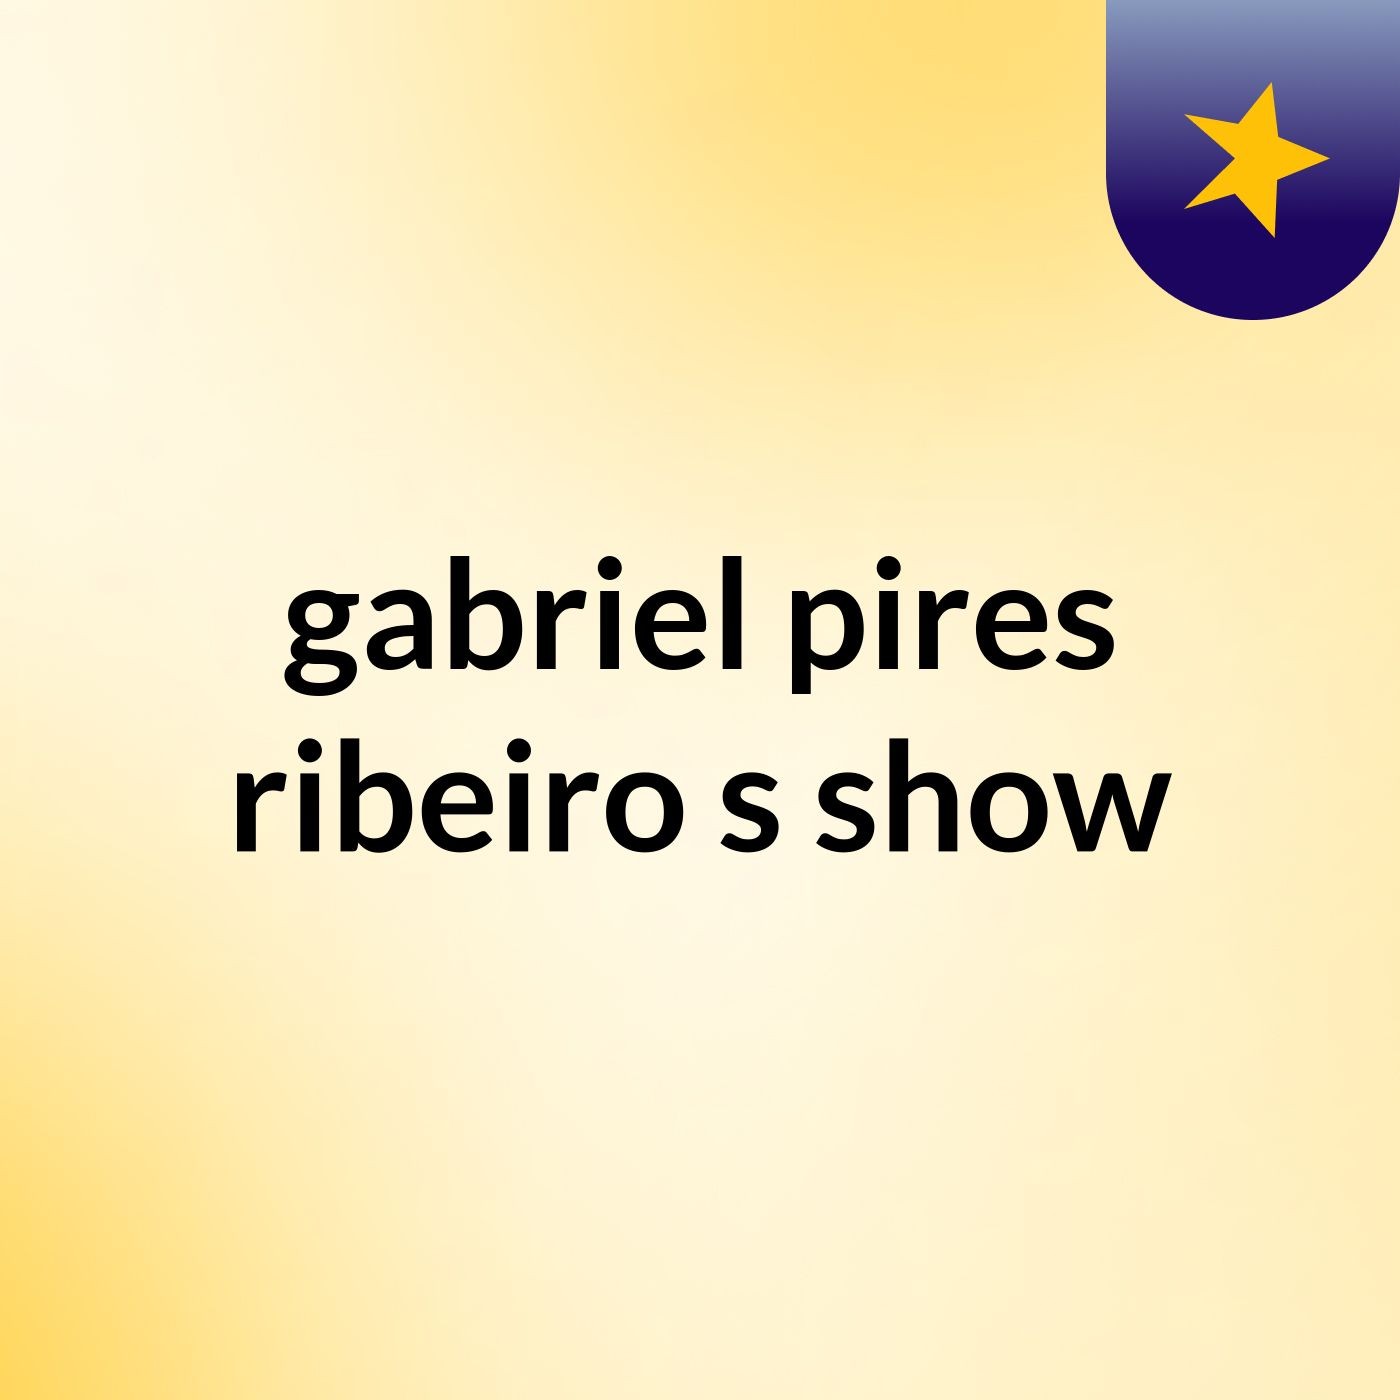 gabriel pires ribeiro's show